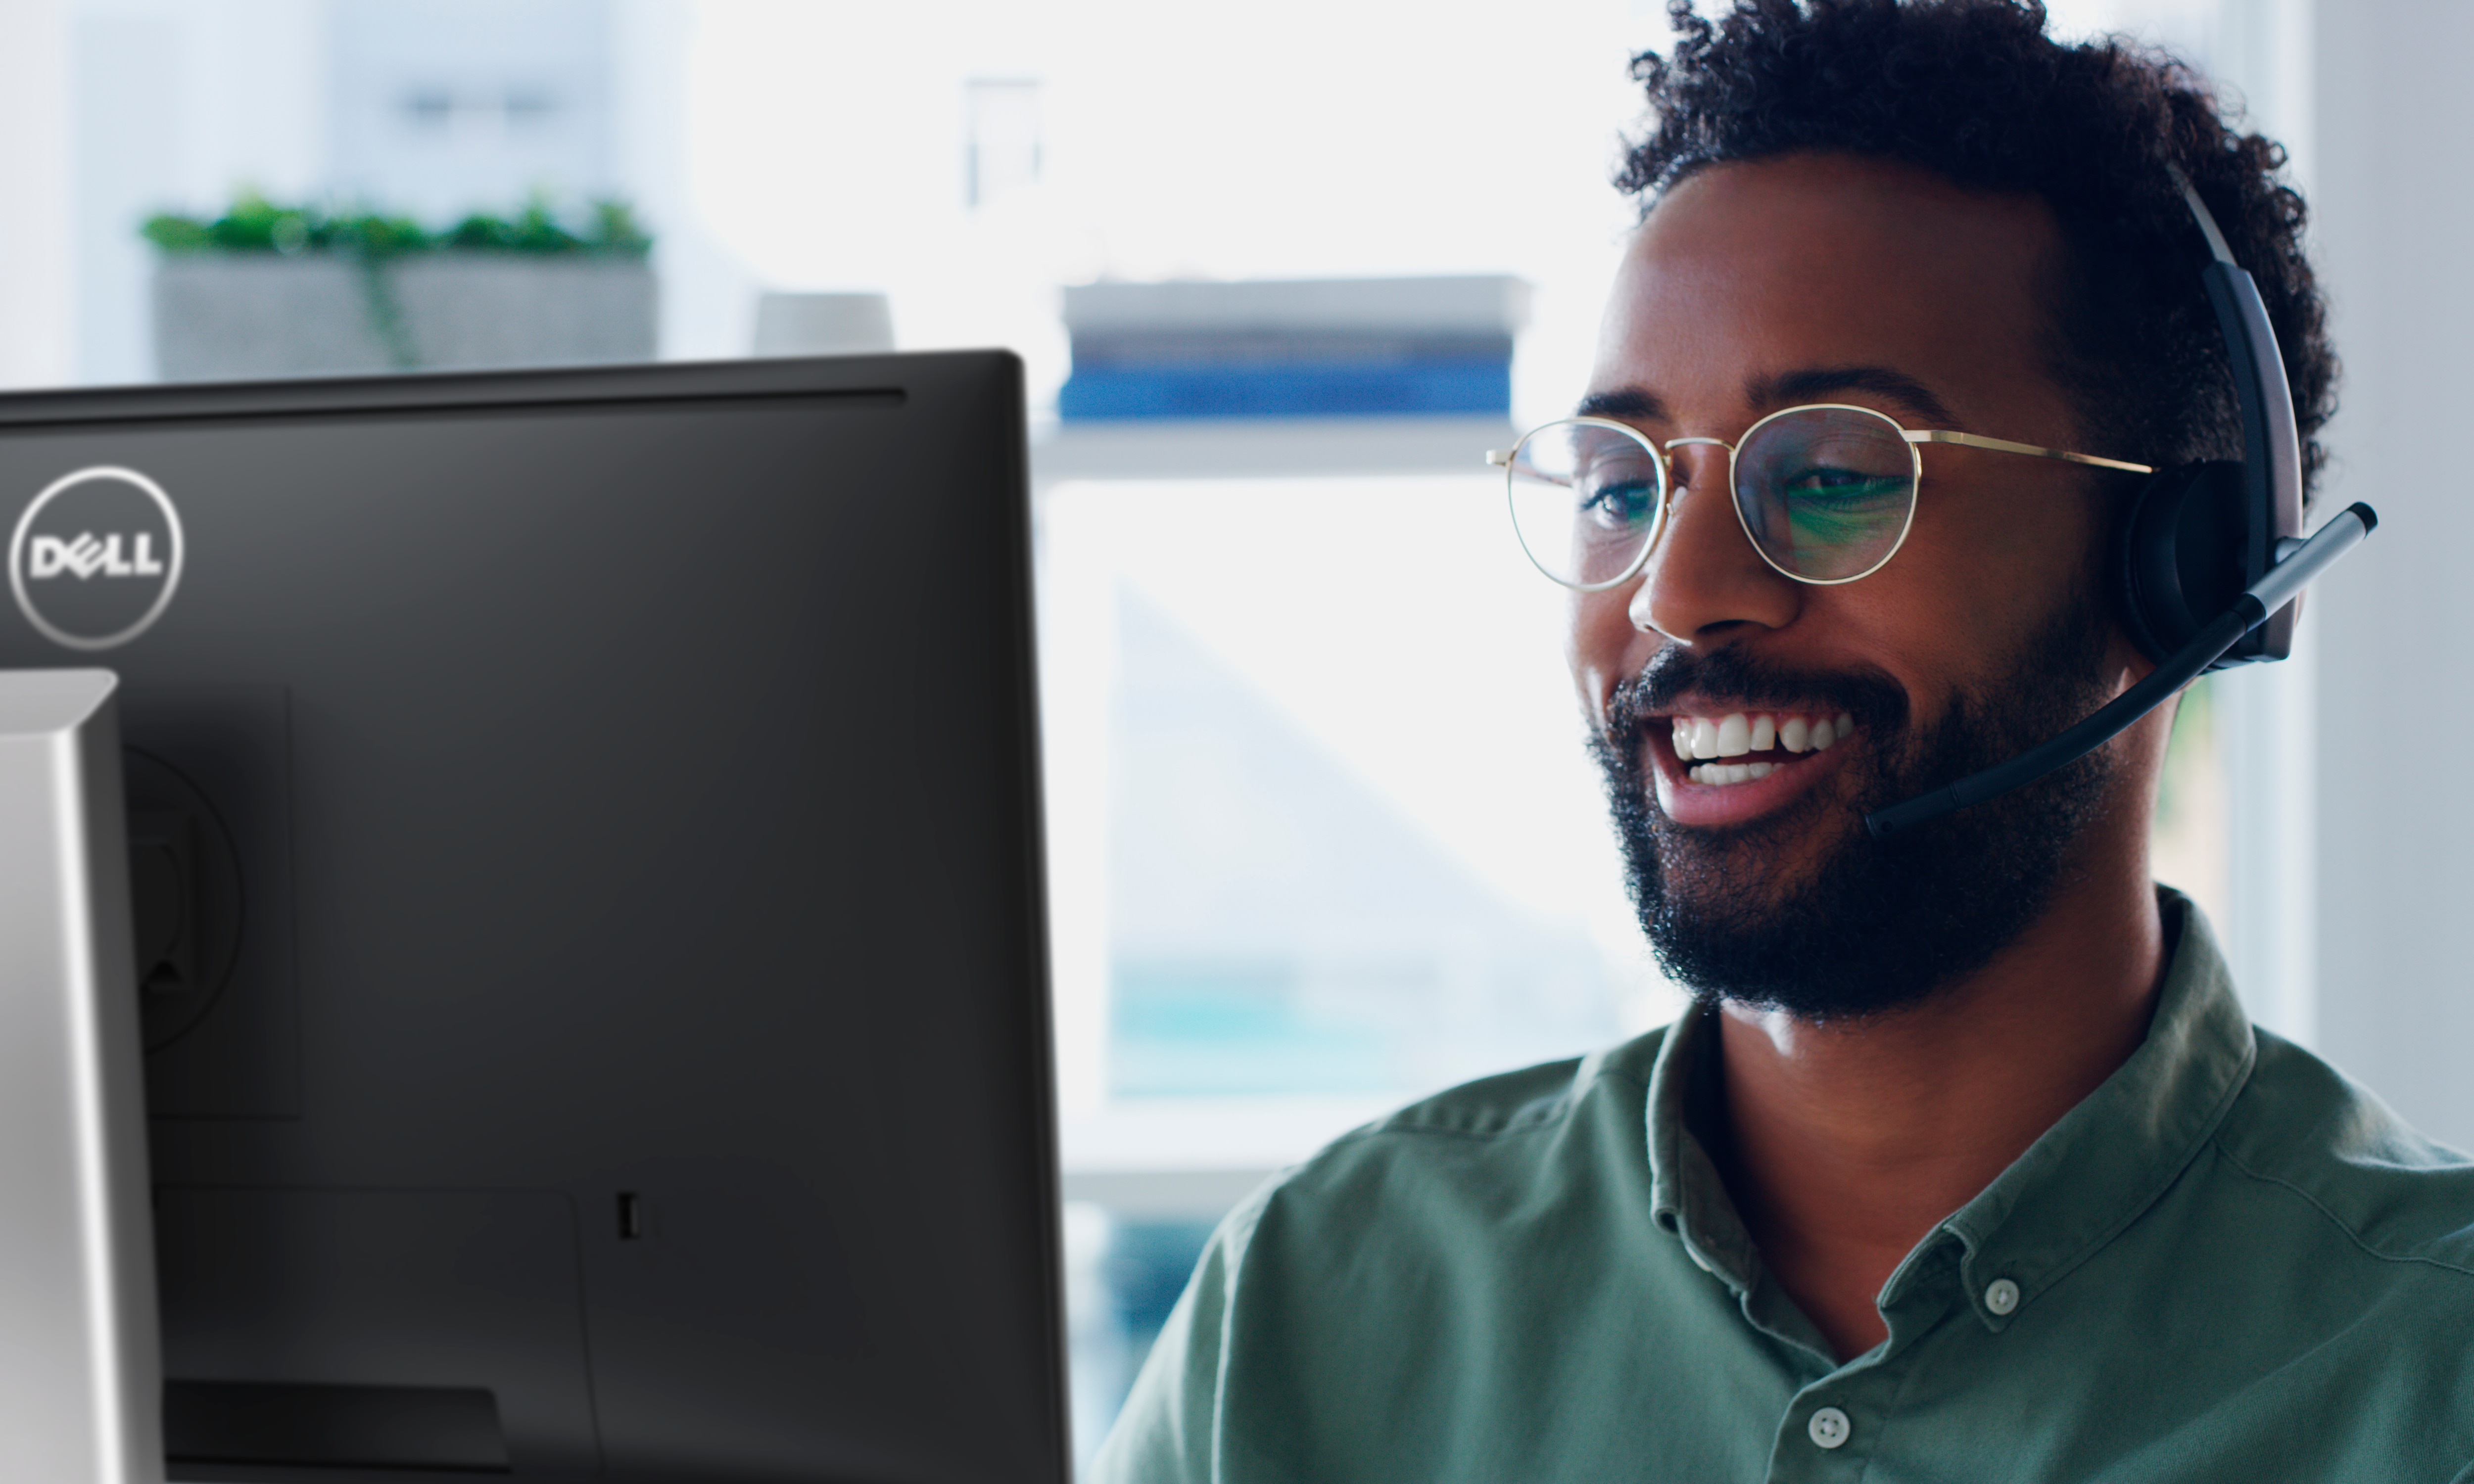 Uomo sorridente che indossa un paio di occhiali e le cuffie sulla testa mentre utilizza il monitor Dell.